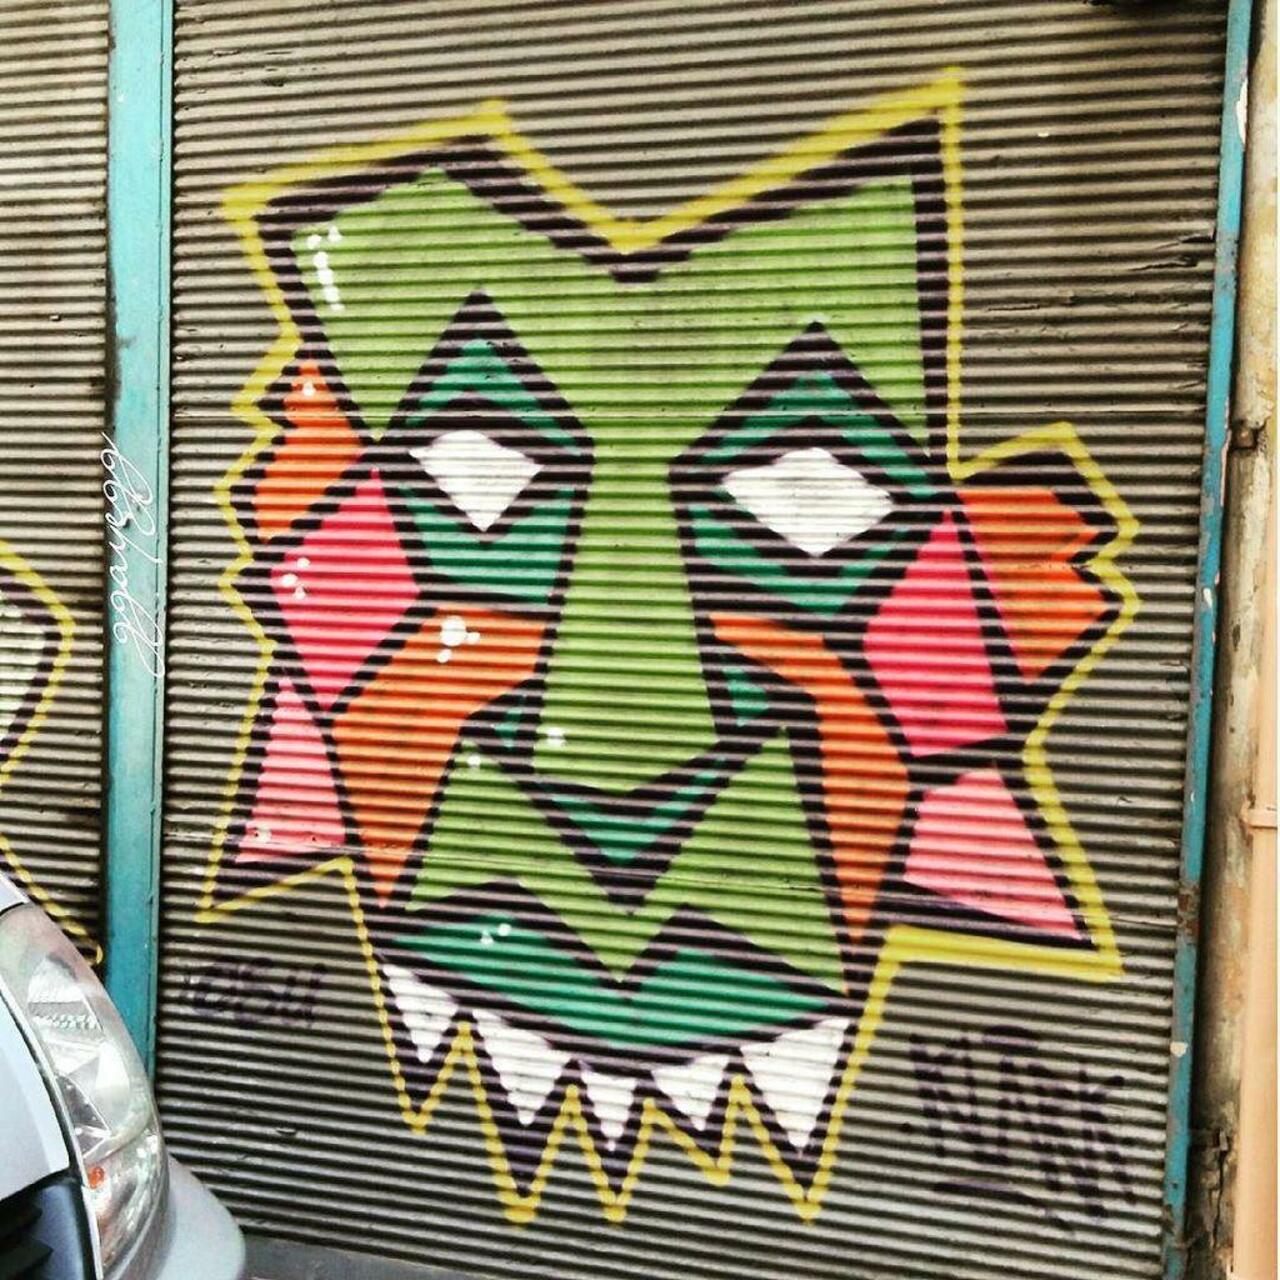 Work by @enklarkkent @dsb_graff #dsb_graff @rsa_graffiti @streetawesome #streetart #urbanart #graffitiart #graffiti… http://t.co/Z5D56yOt93